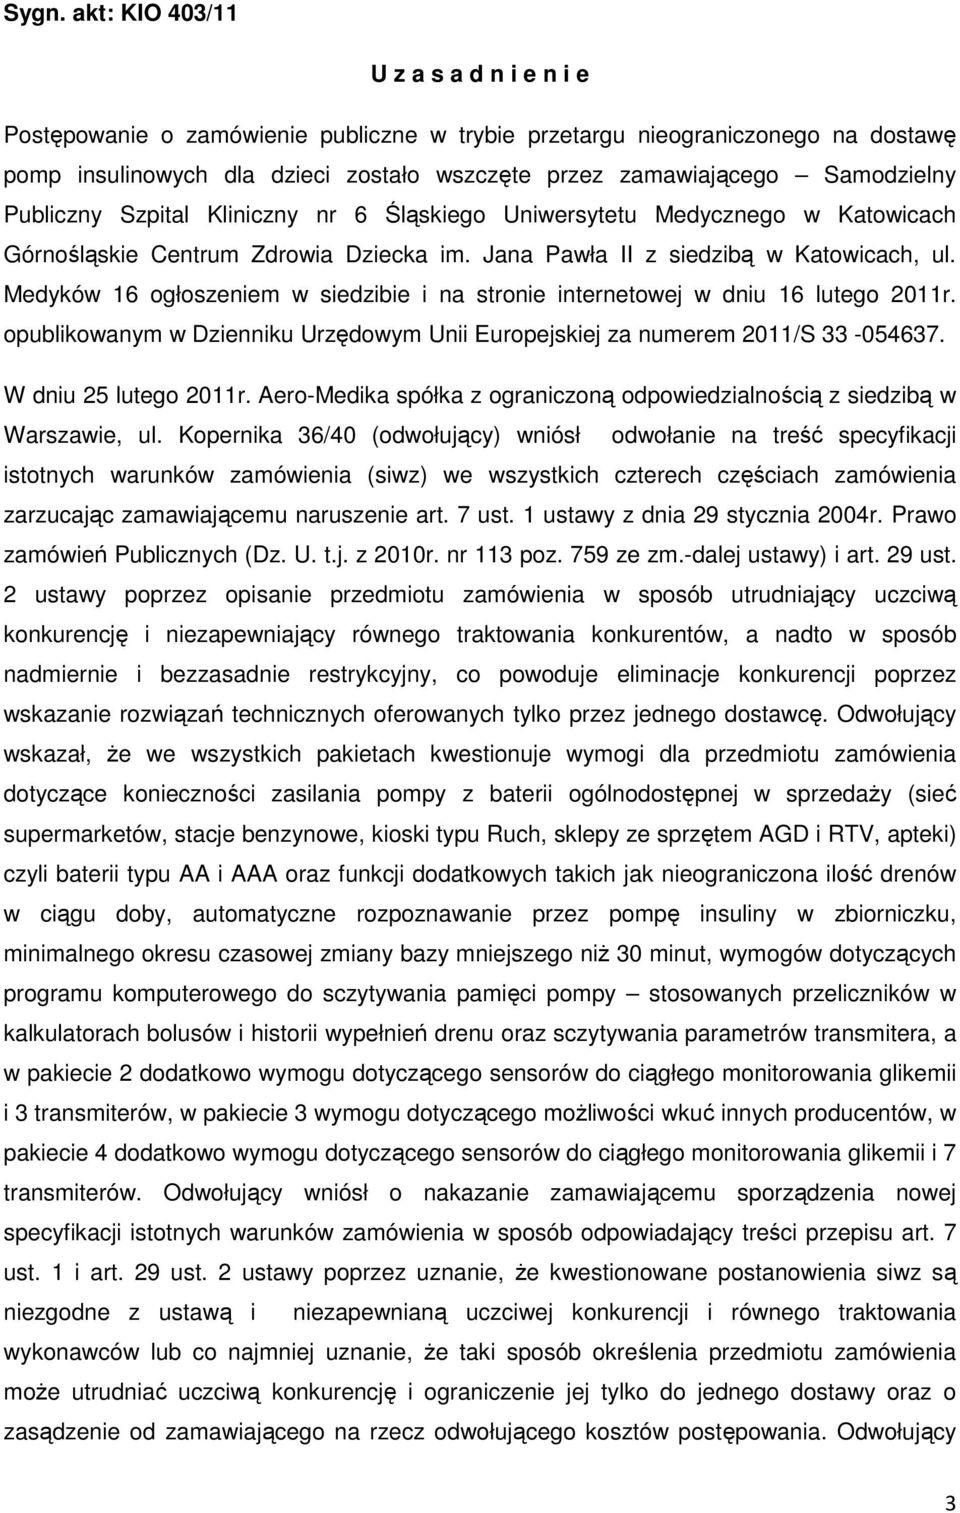 Medyków 16 ogłoszeniem w siedzibie i na stronie internetowej w dniu 16 lutego 2011r. opublikowanym w Dzienniku Urzędowym Unii Europejskiej za numerem 2011/S 33-054637. W dniu 25 lutego 2011r.